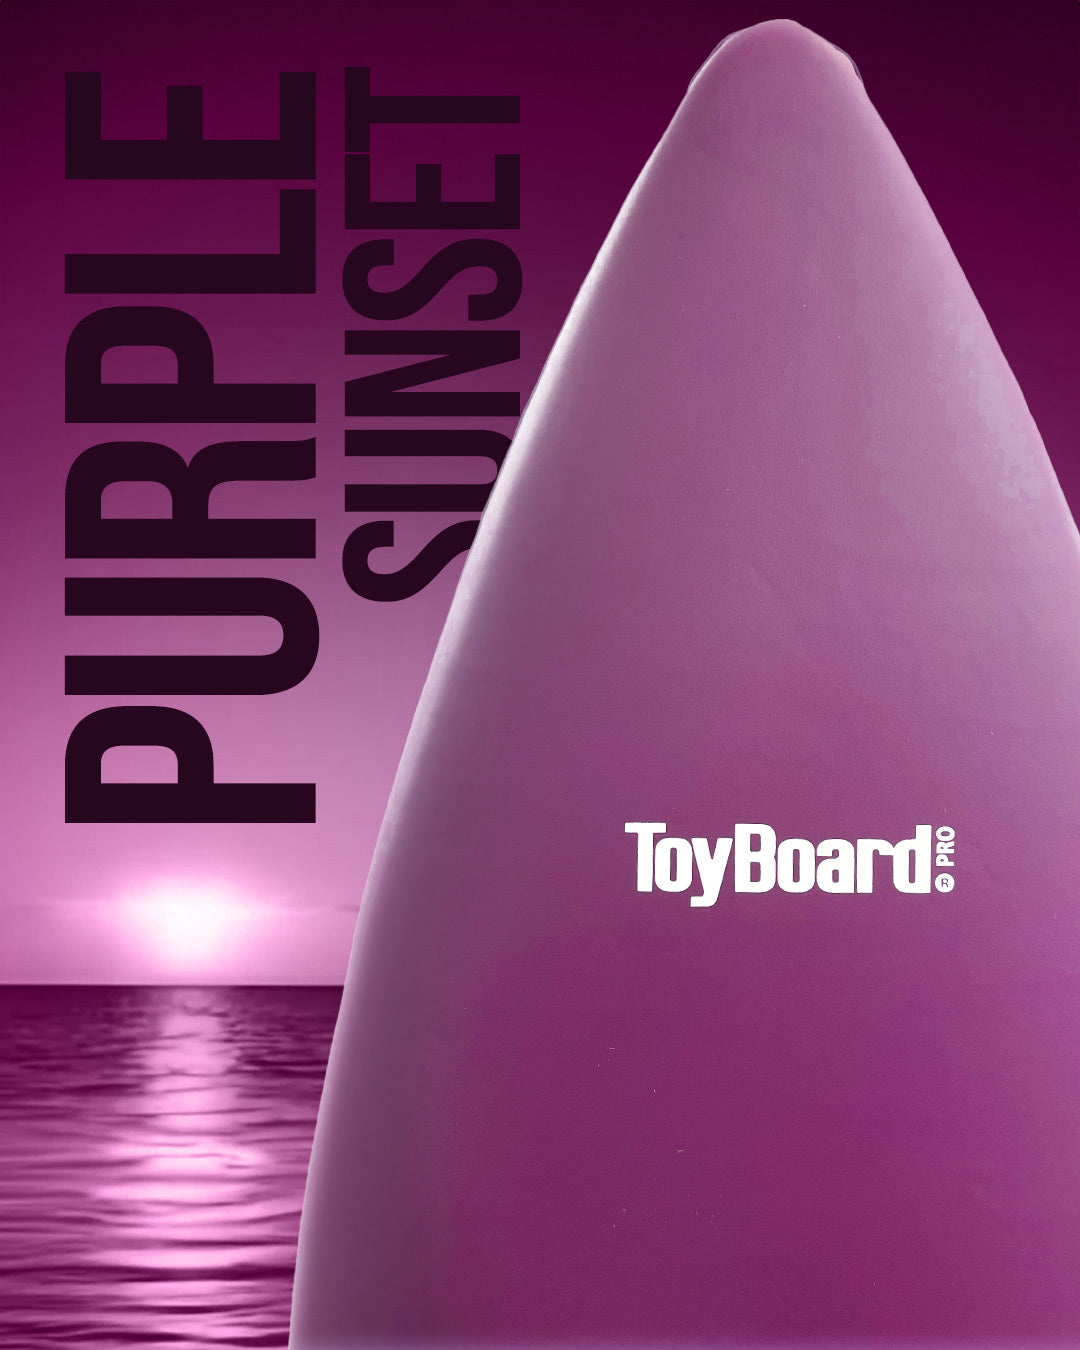 Purple Sunset Pro Balance Board